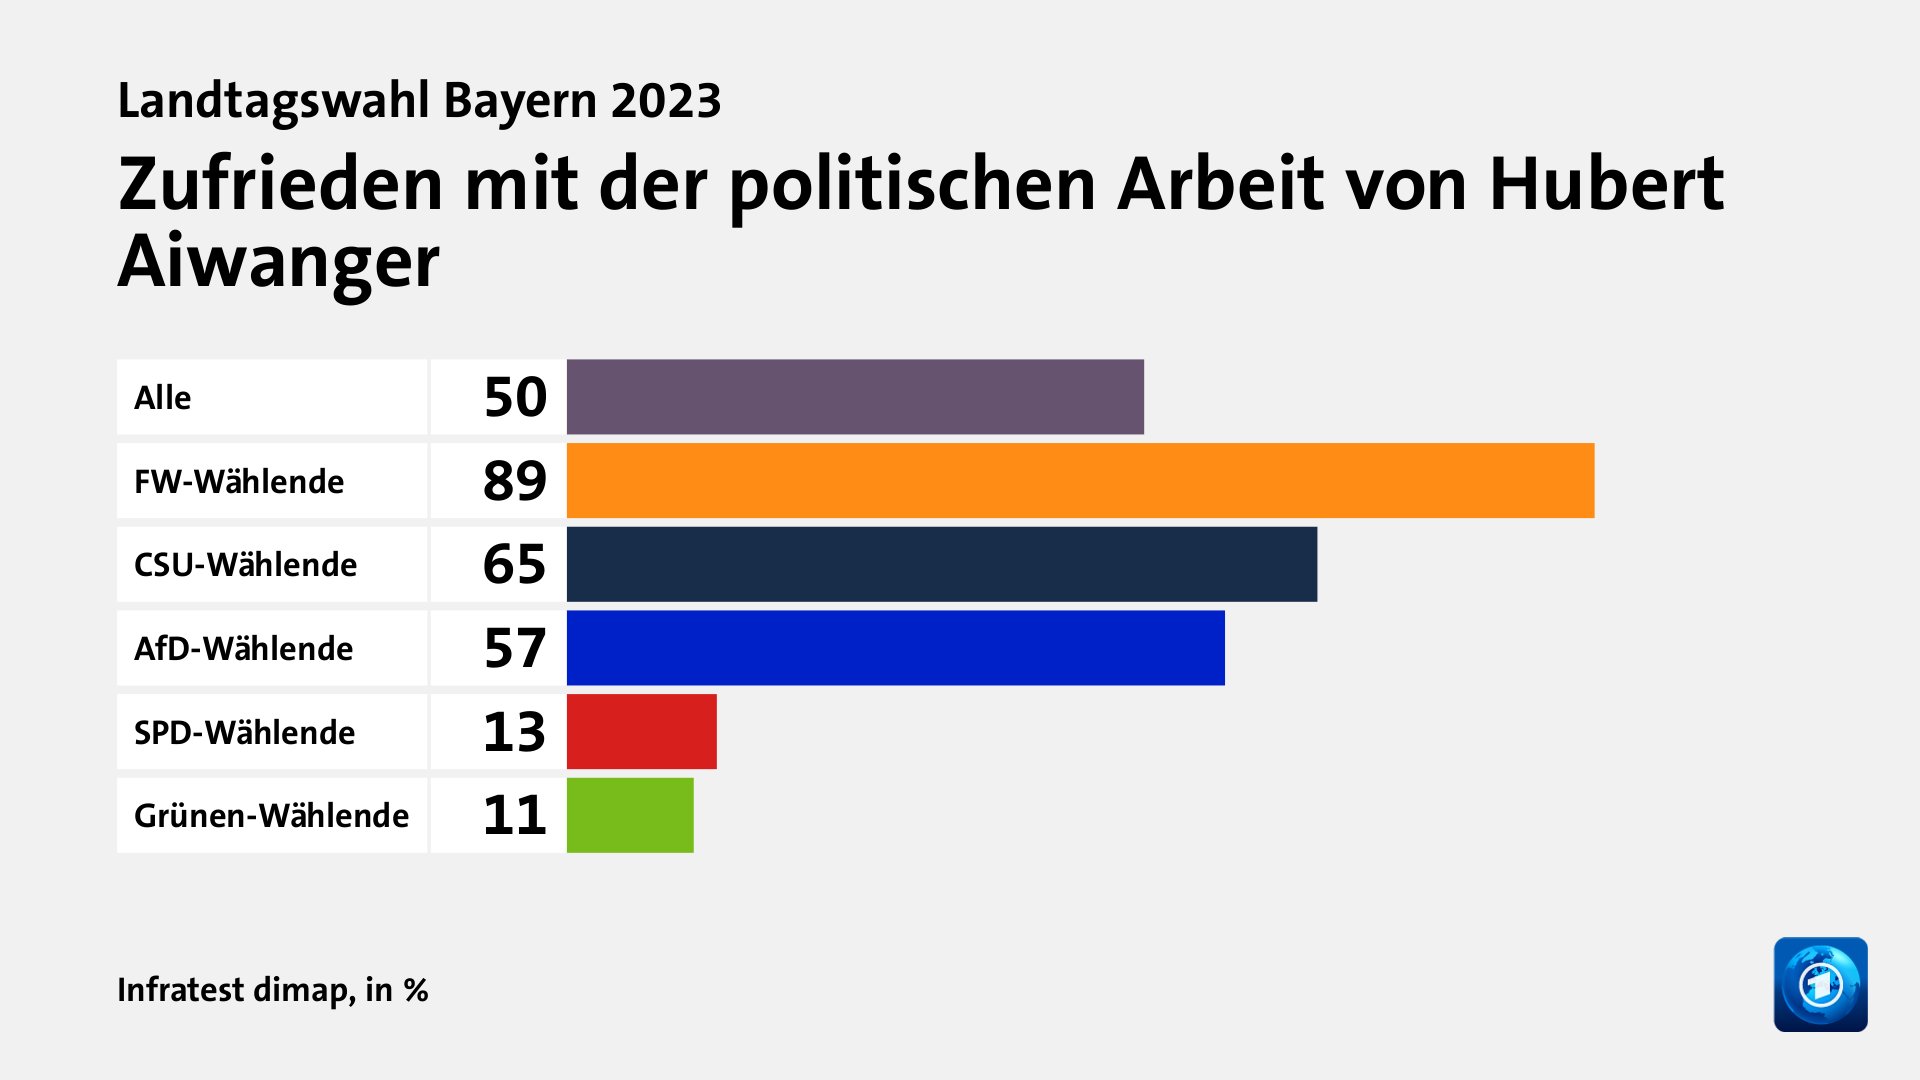 Zufrieden mit der politischen Arbeit von Hubert Aiwanger, in %: Alle 50, FW-Wählende 89, CSU-Wählende 65, AfD-Wählende 57, SPD-Wählende 13, Grünen-Wählende 11, Quelle: Infratest dimap